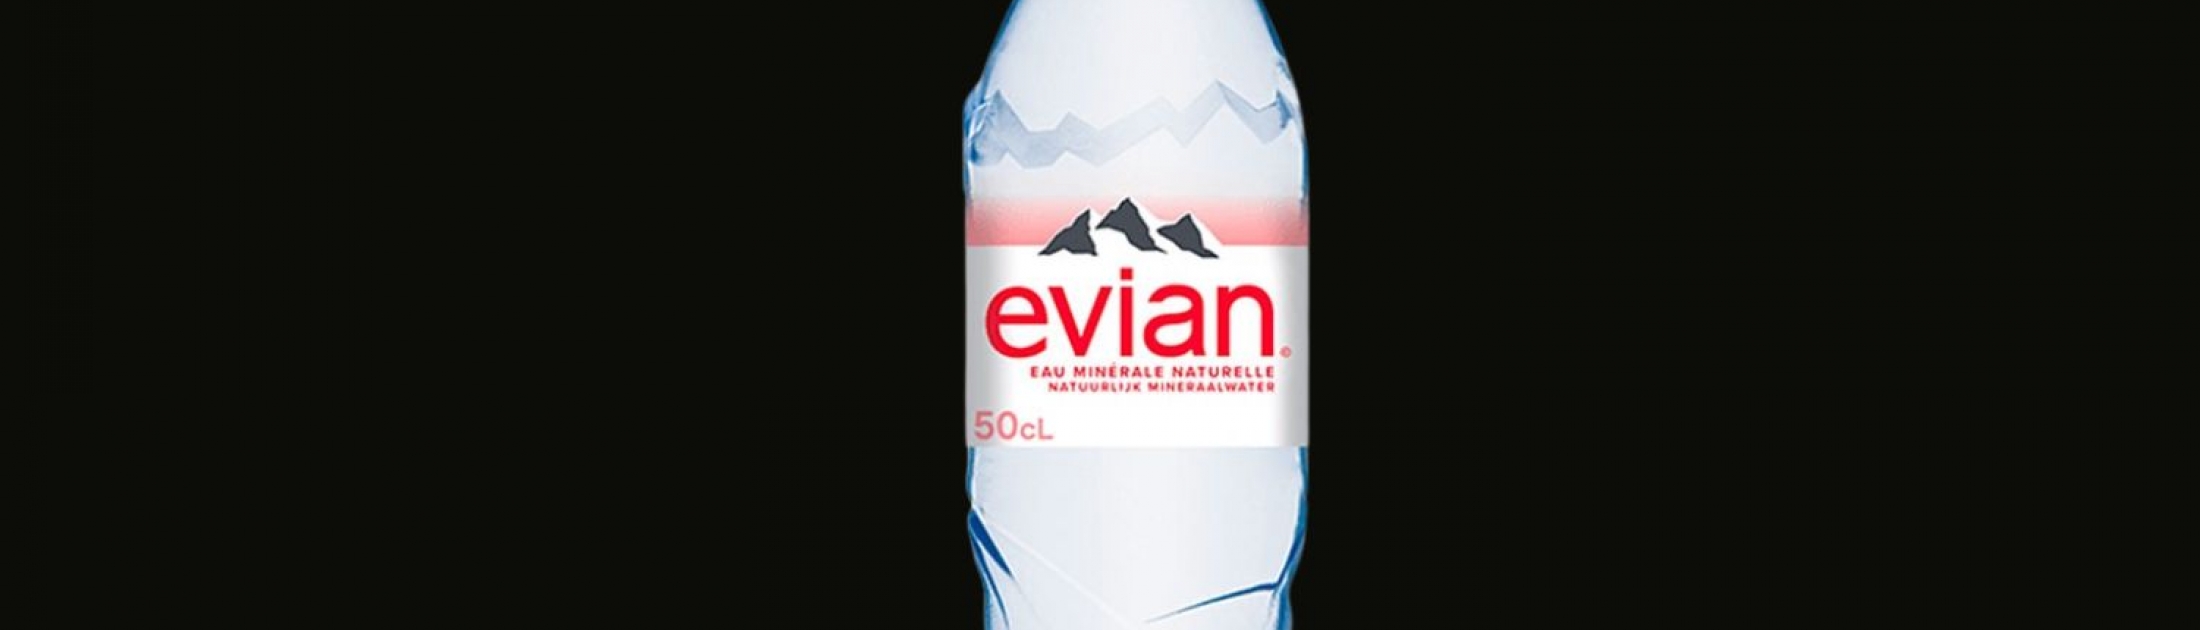 Evian 